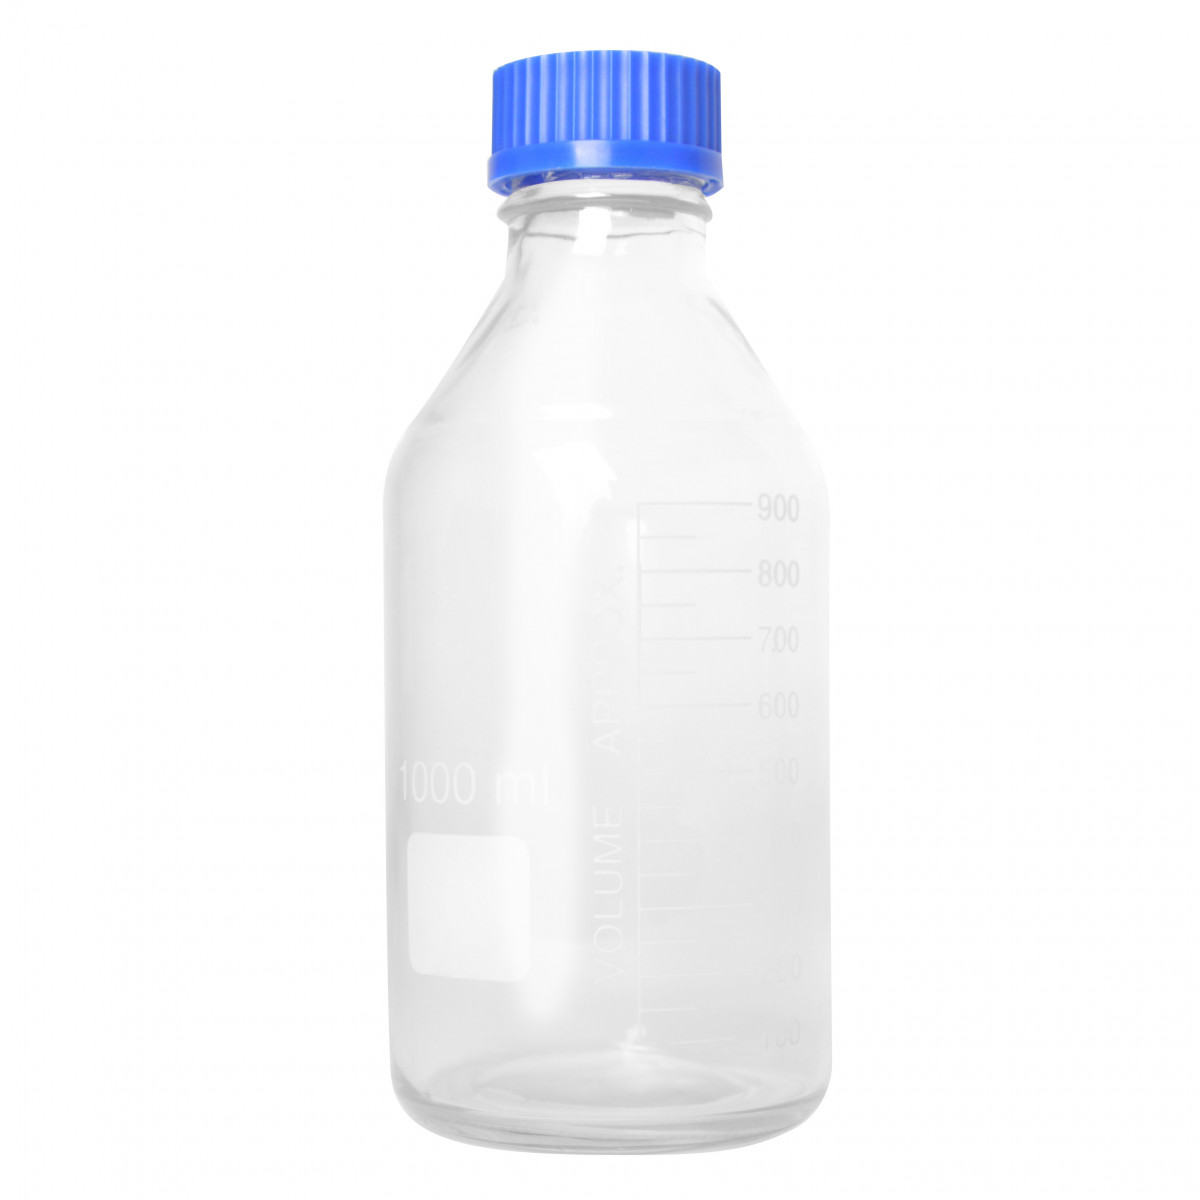 Hefeflasche Glas sterilisierbar 1000 ml